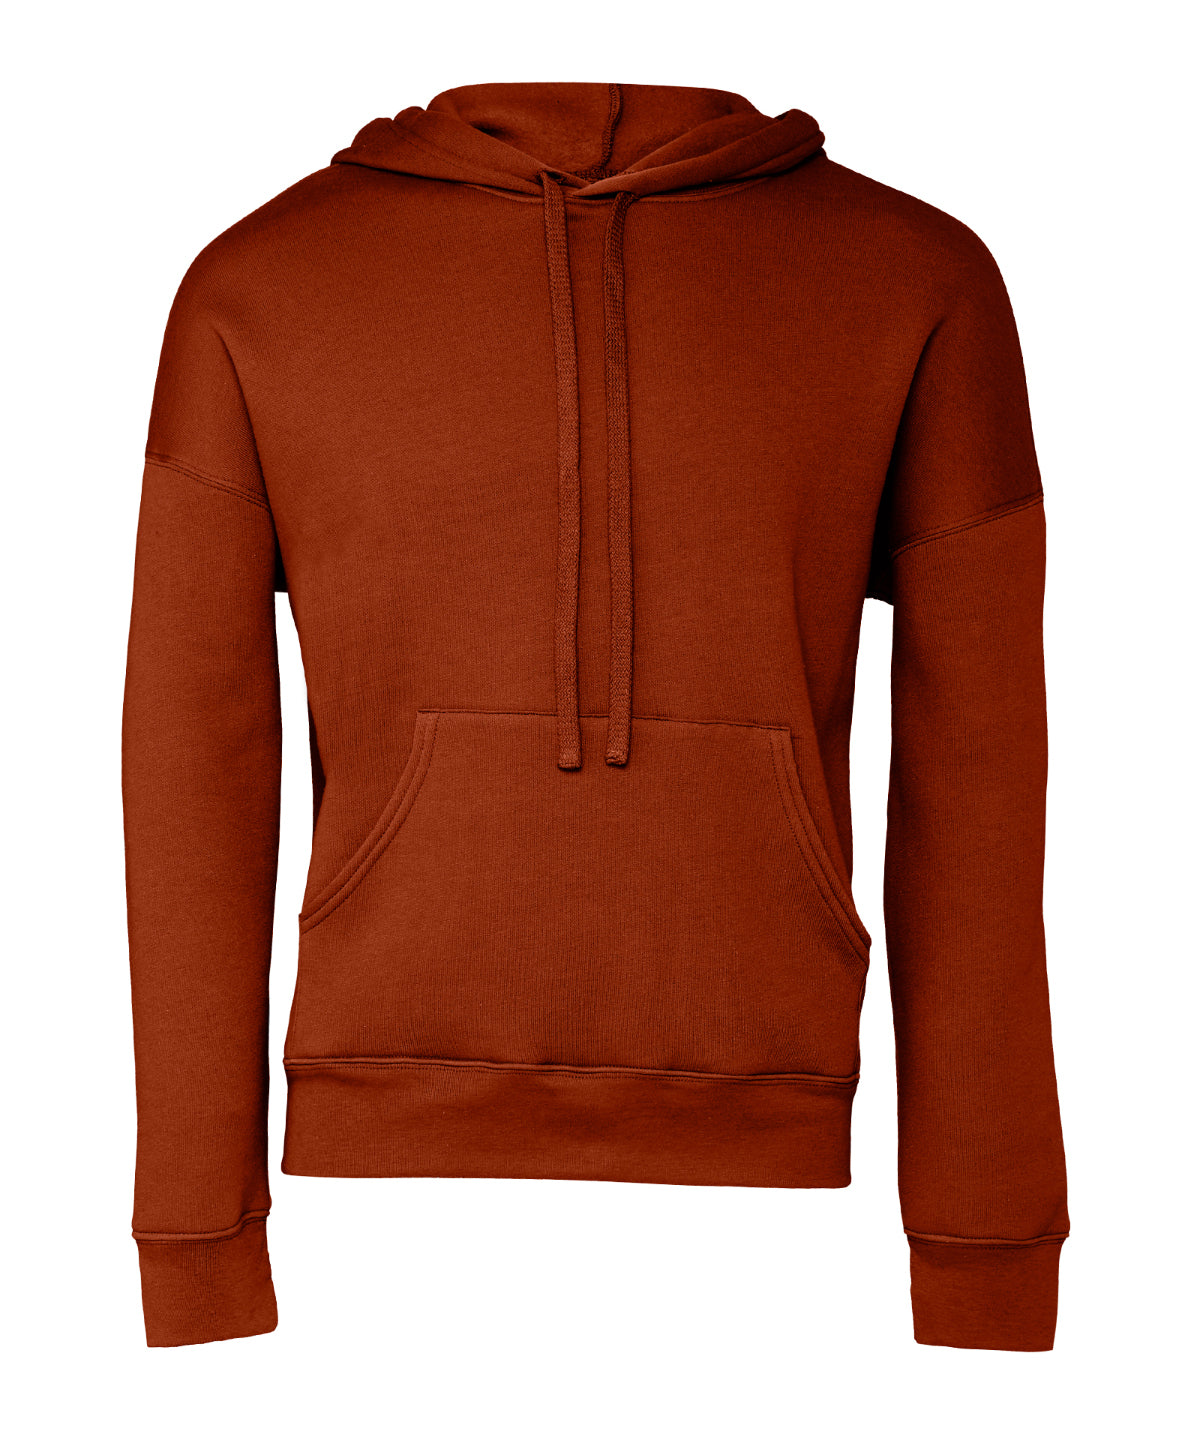 Personalised Hoodies - Heather Grey Bella Canvas Unisex sponge fleece pullover DTM hoodie